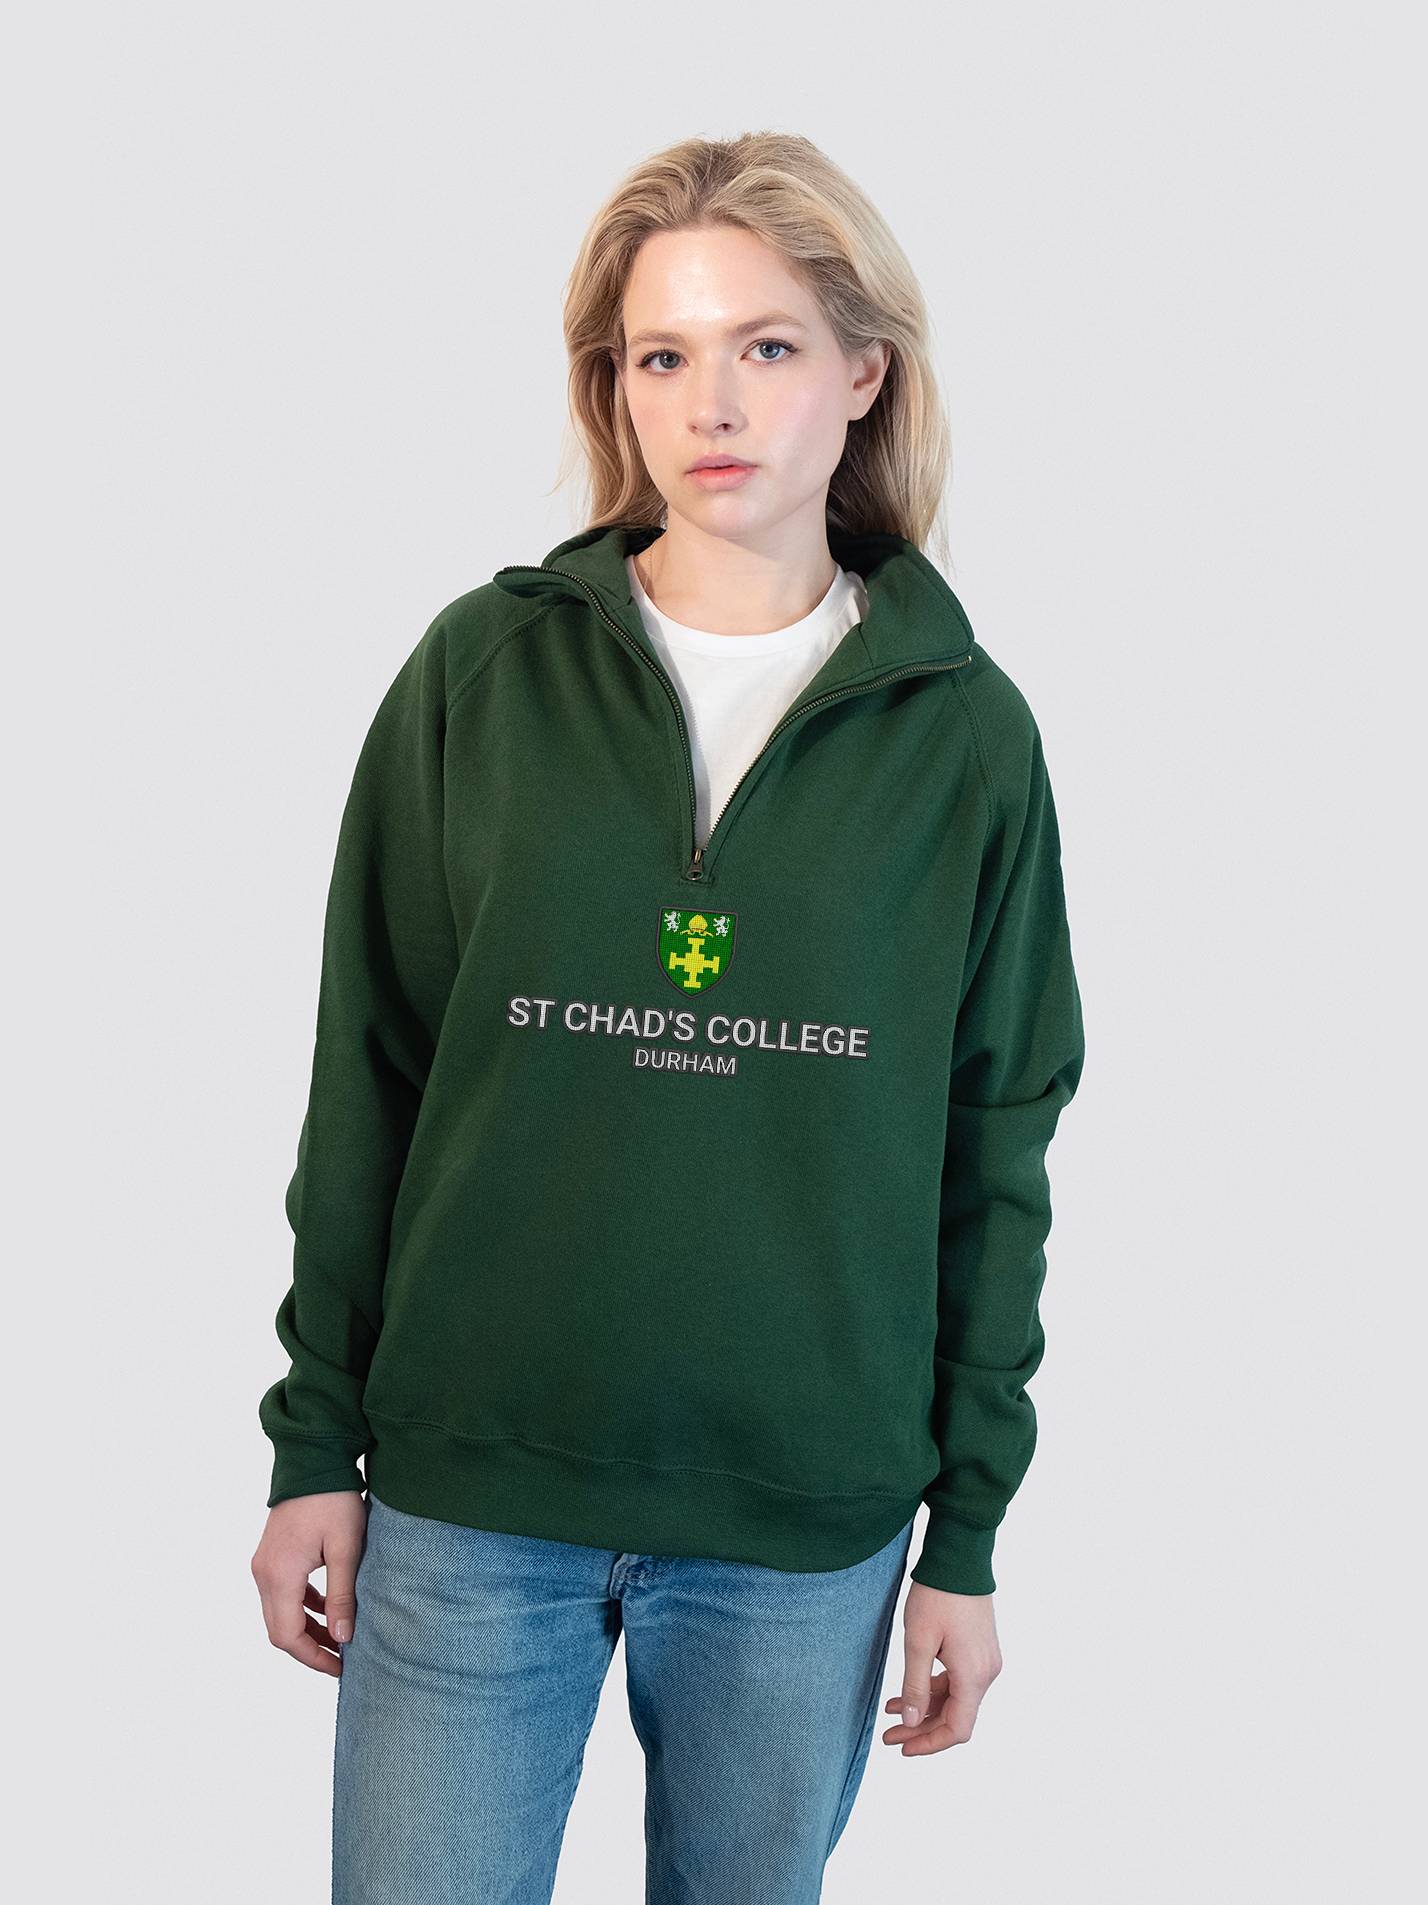 St Chad's College Durham Heritage Unisex 1/4 Zip Sweatshirt